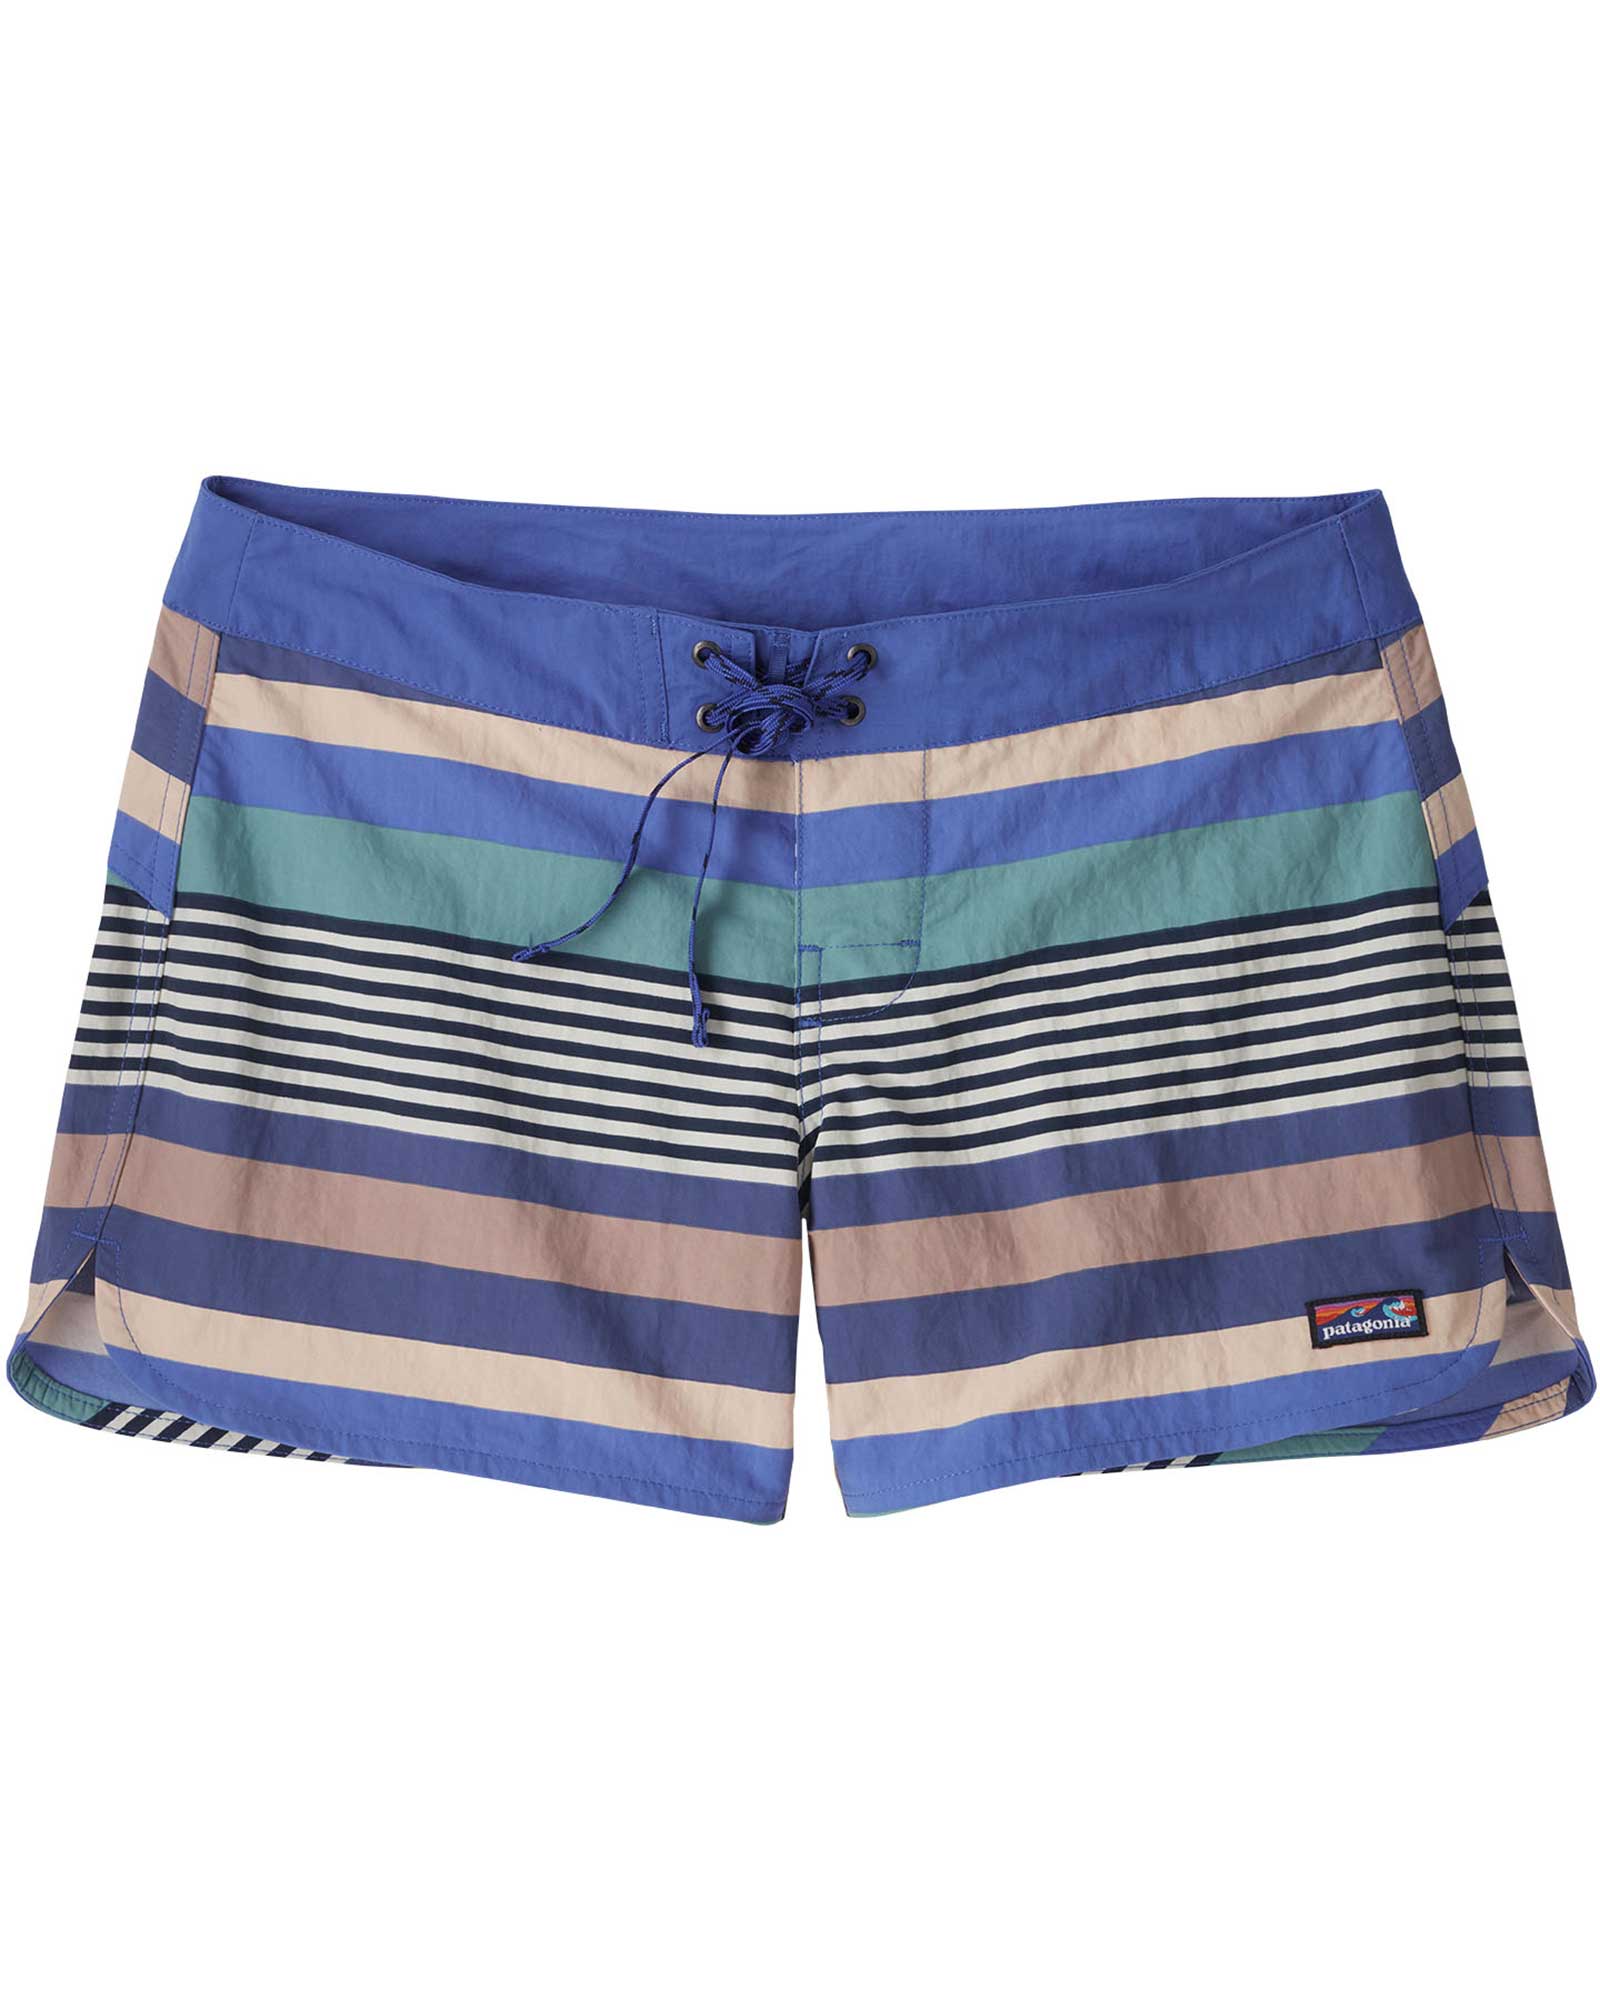 Patagonia Wavefarer Women’s 5" Board Shorts - Float Blue/Fitz Stripe 16